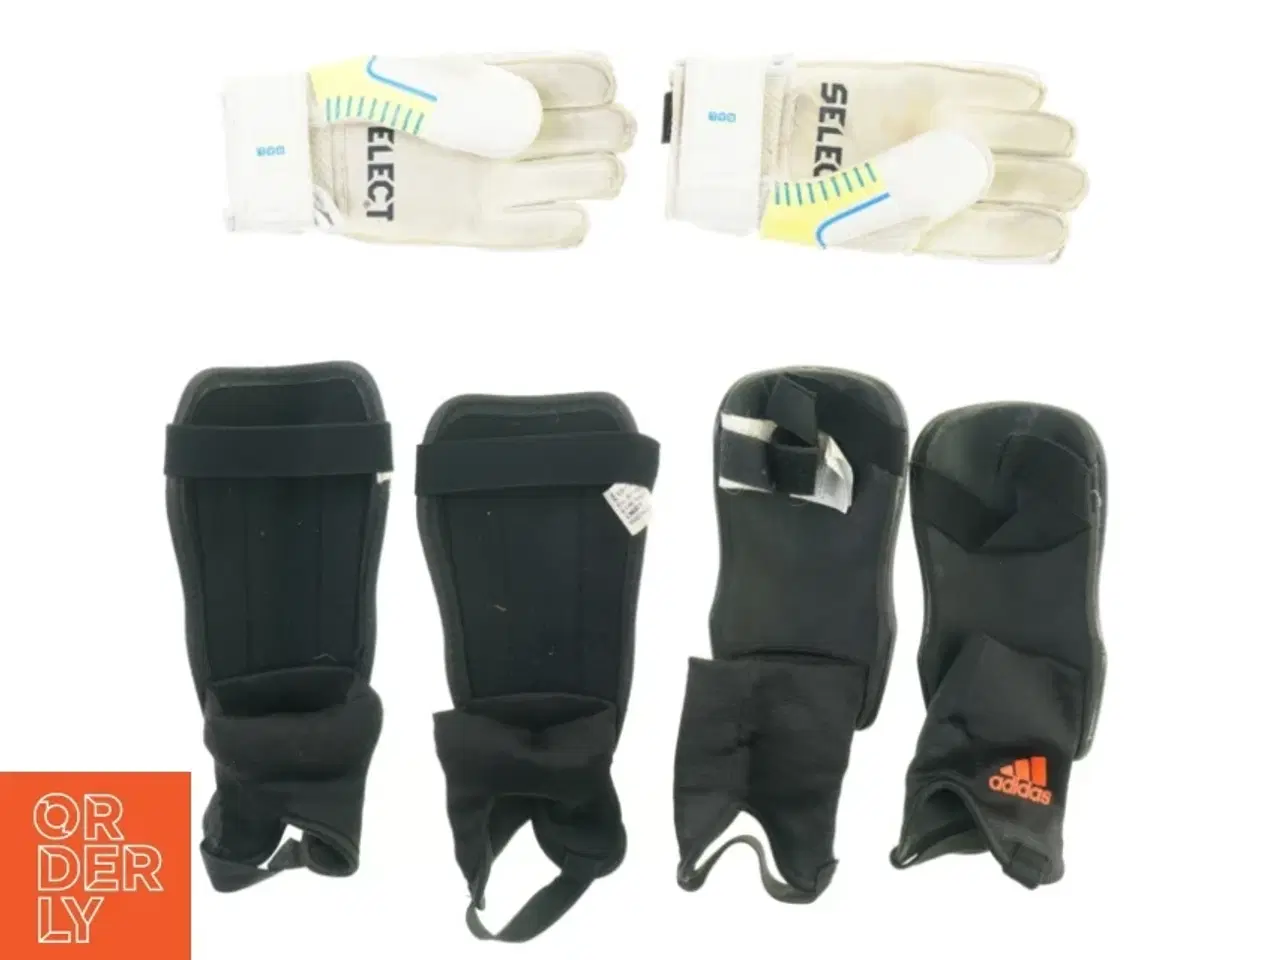 Billede 1 - Fodbold udstyr fra Adidas Select (str. 116 til 134 cm handsker size 3)